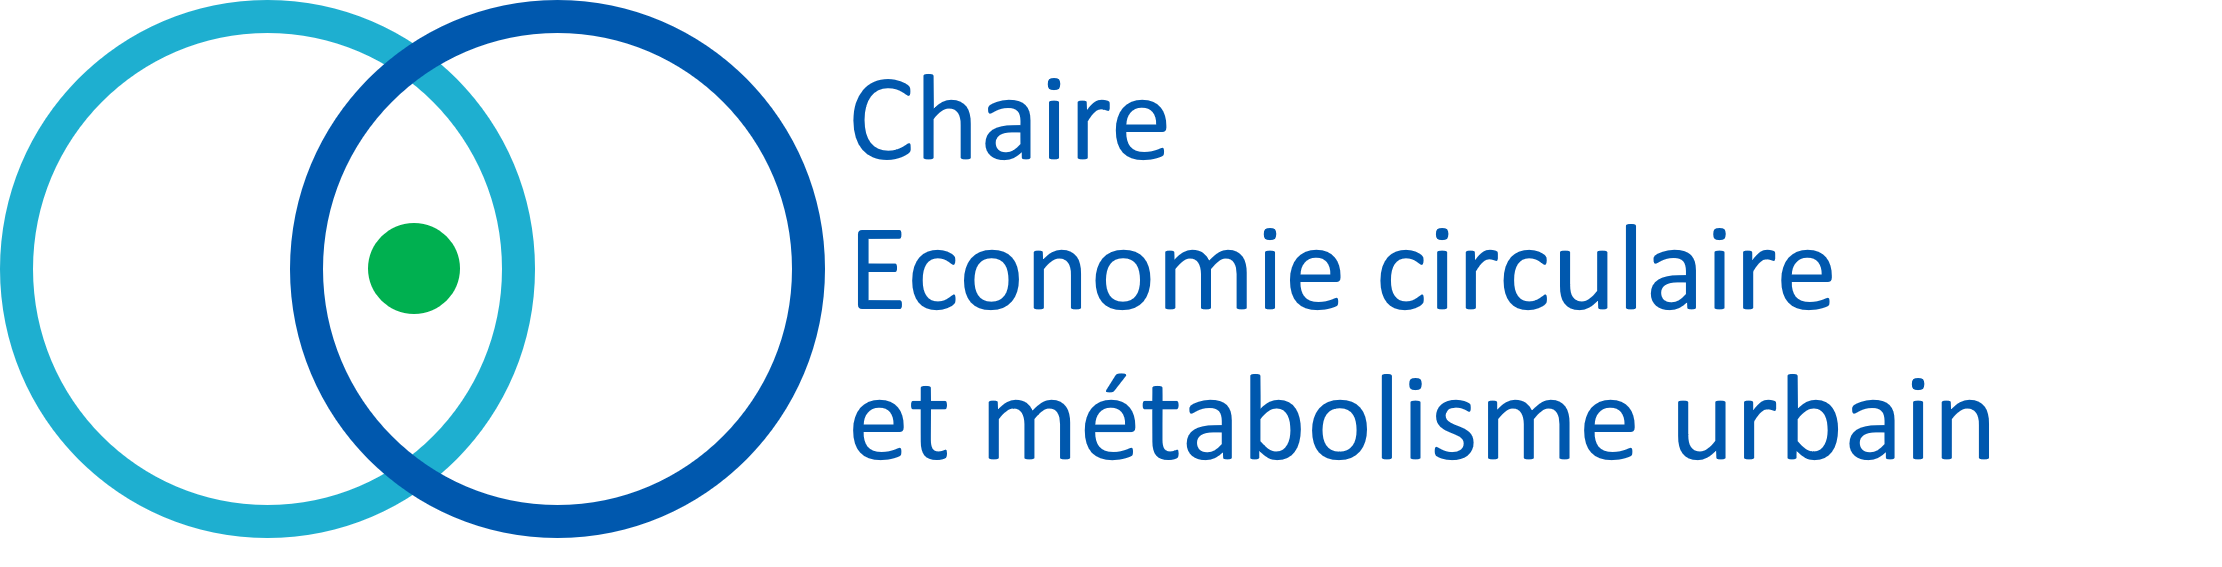 chaire-ecmu-univ-gustave-eiffel-fr logo